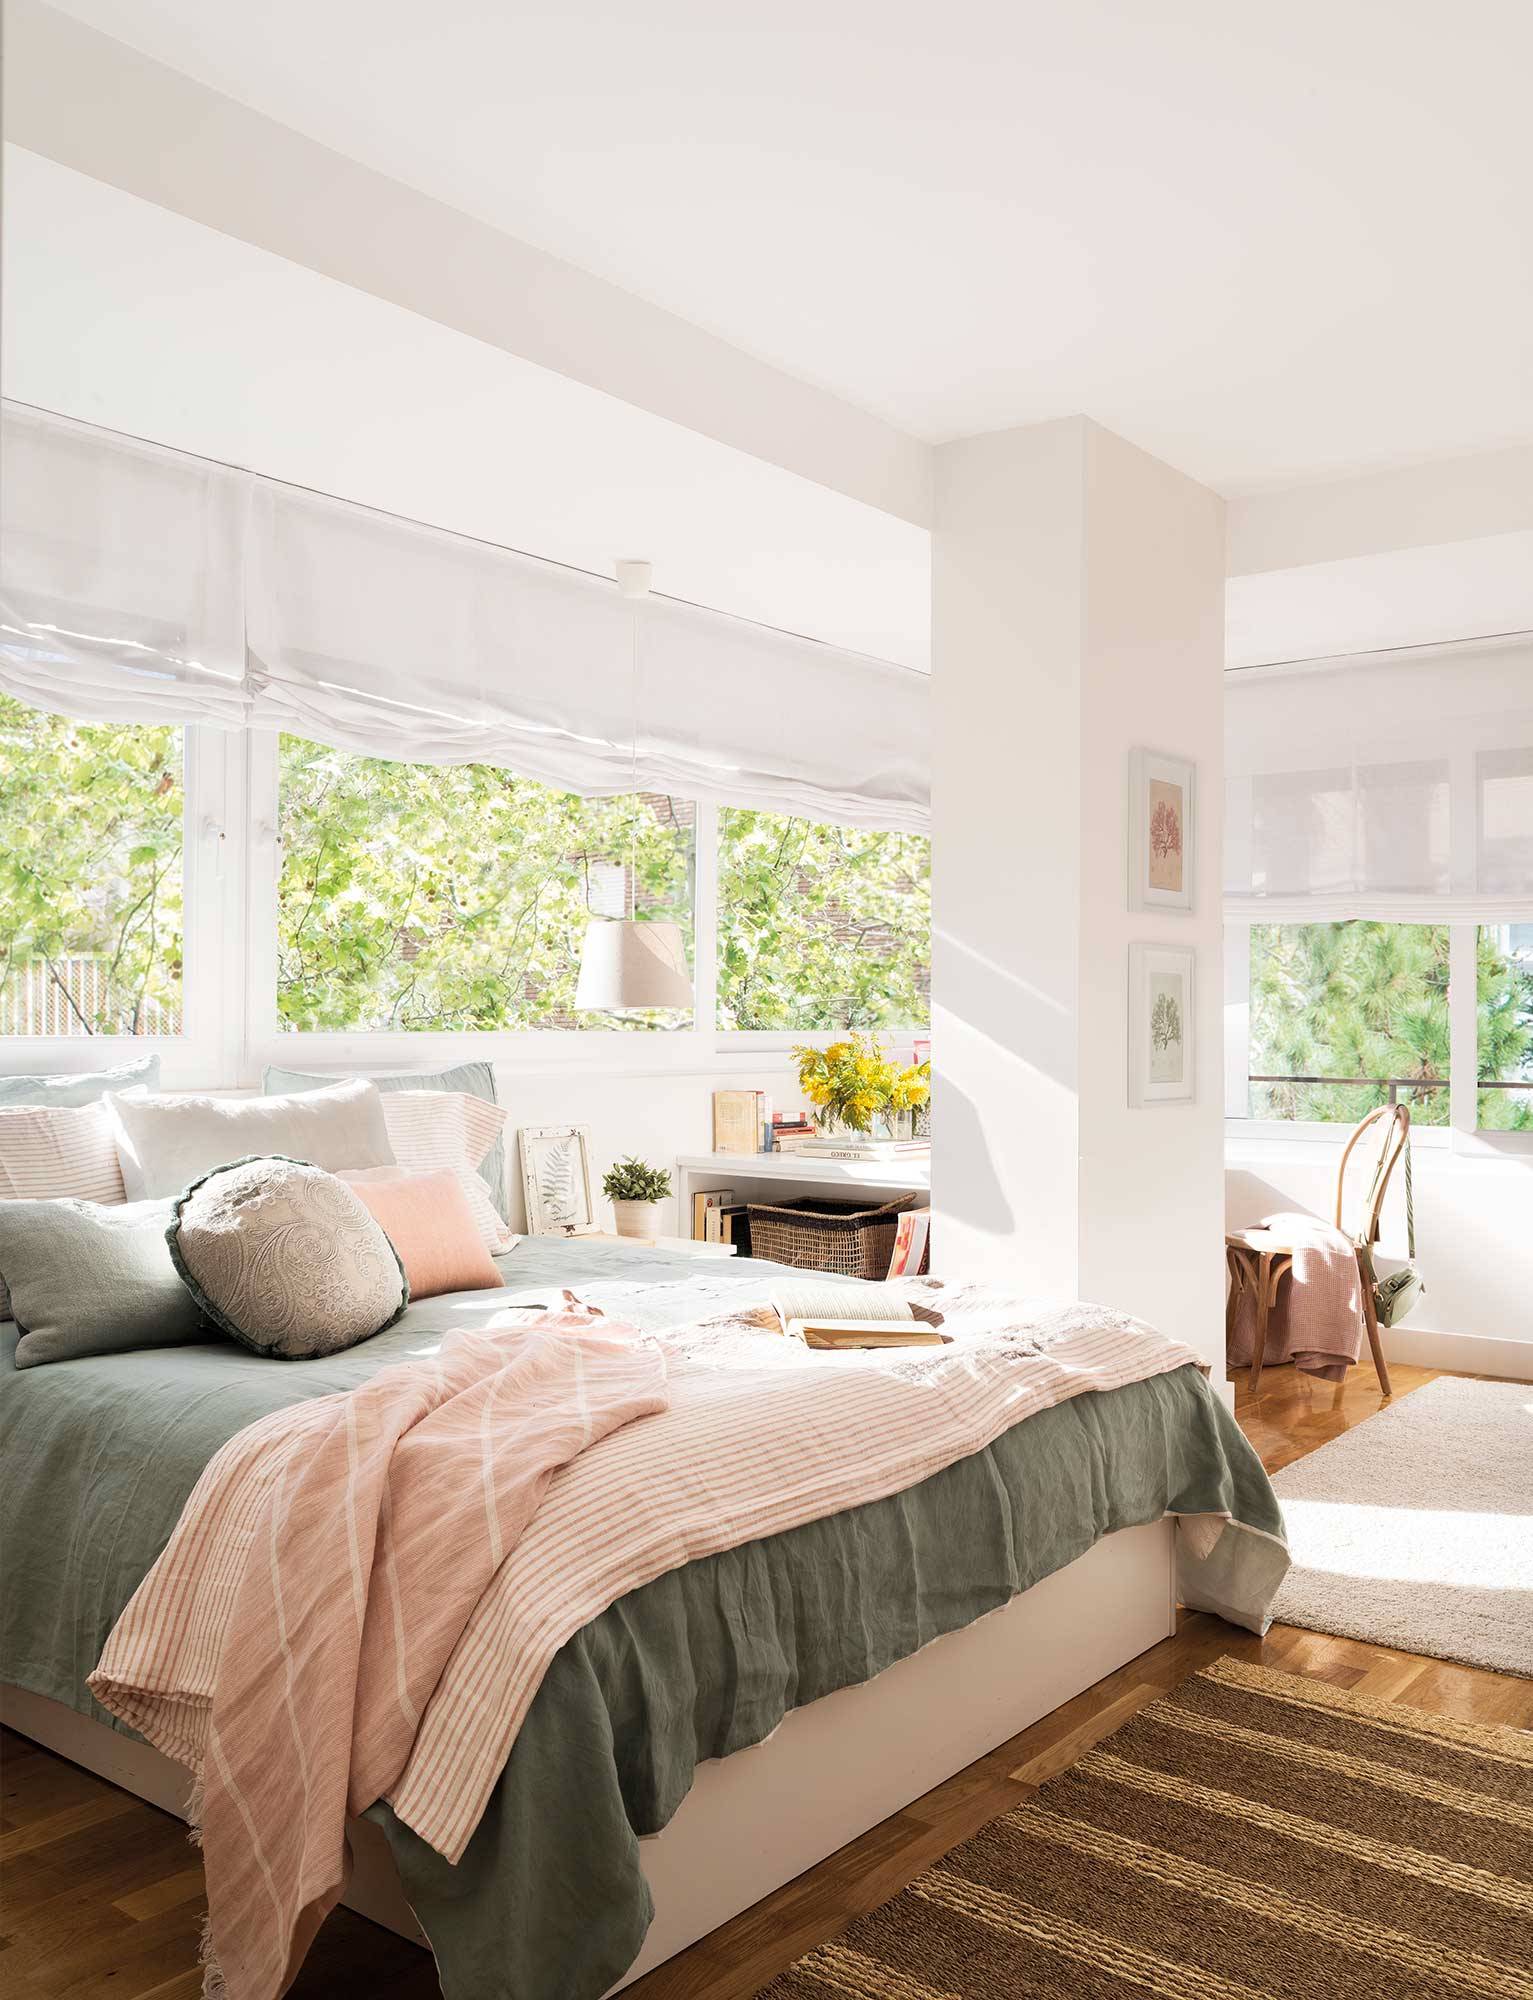 Dormitorio blanco con zona de estudio y grandes ventanales en "L" 00522640